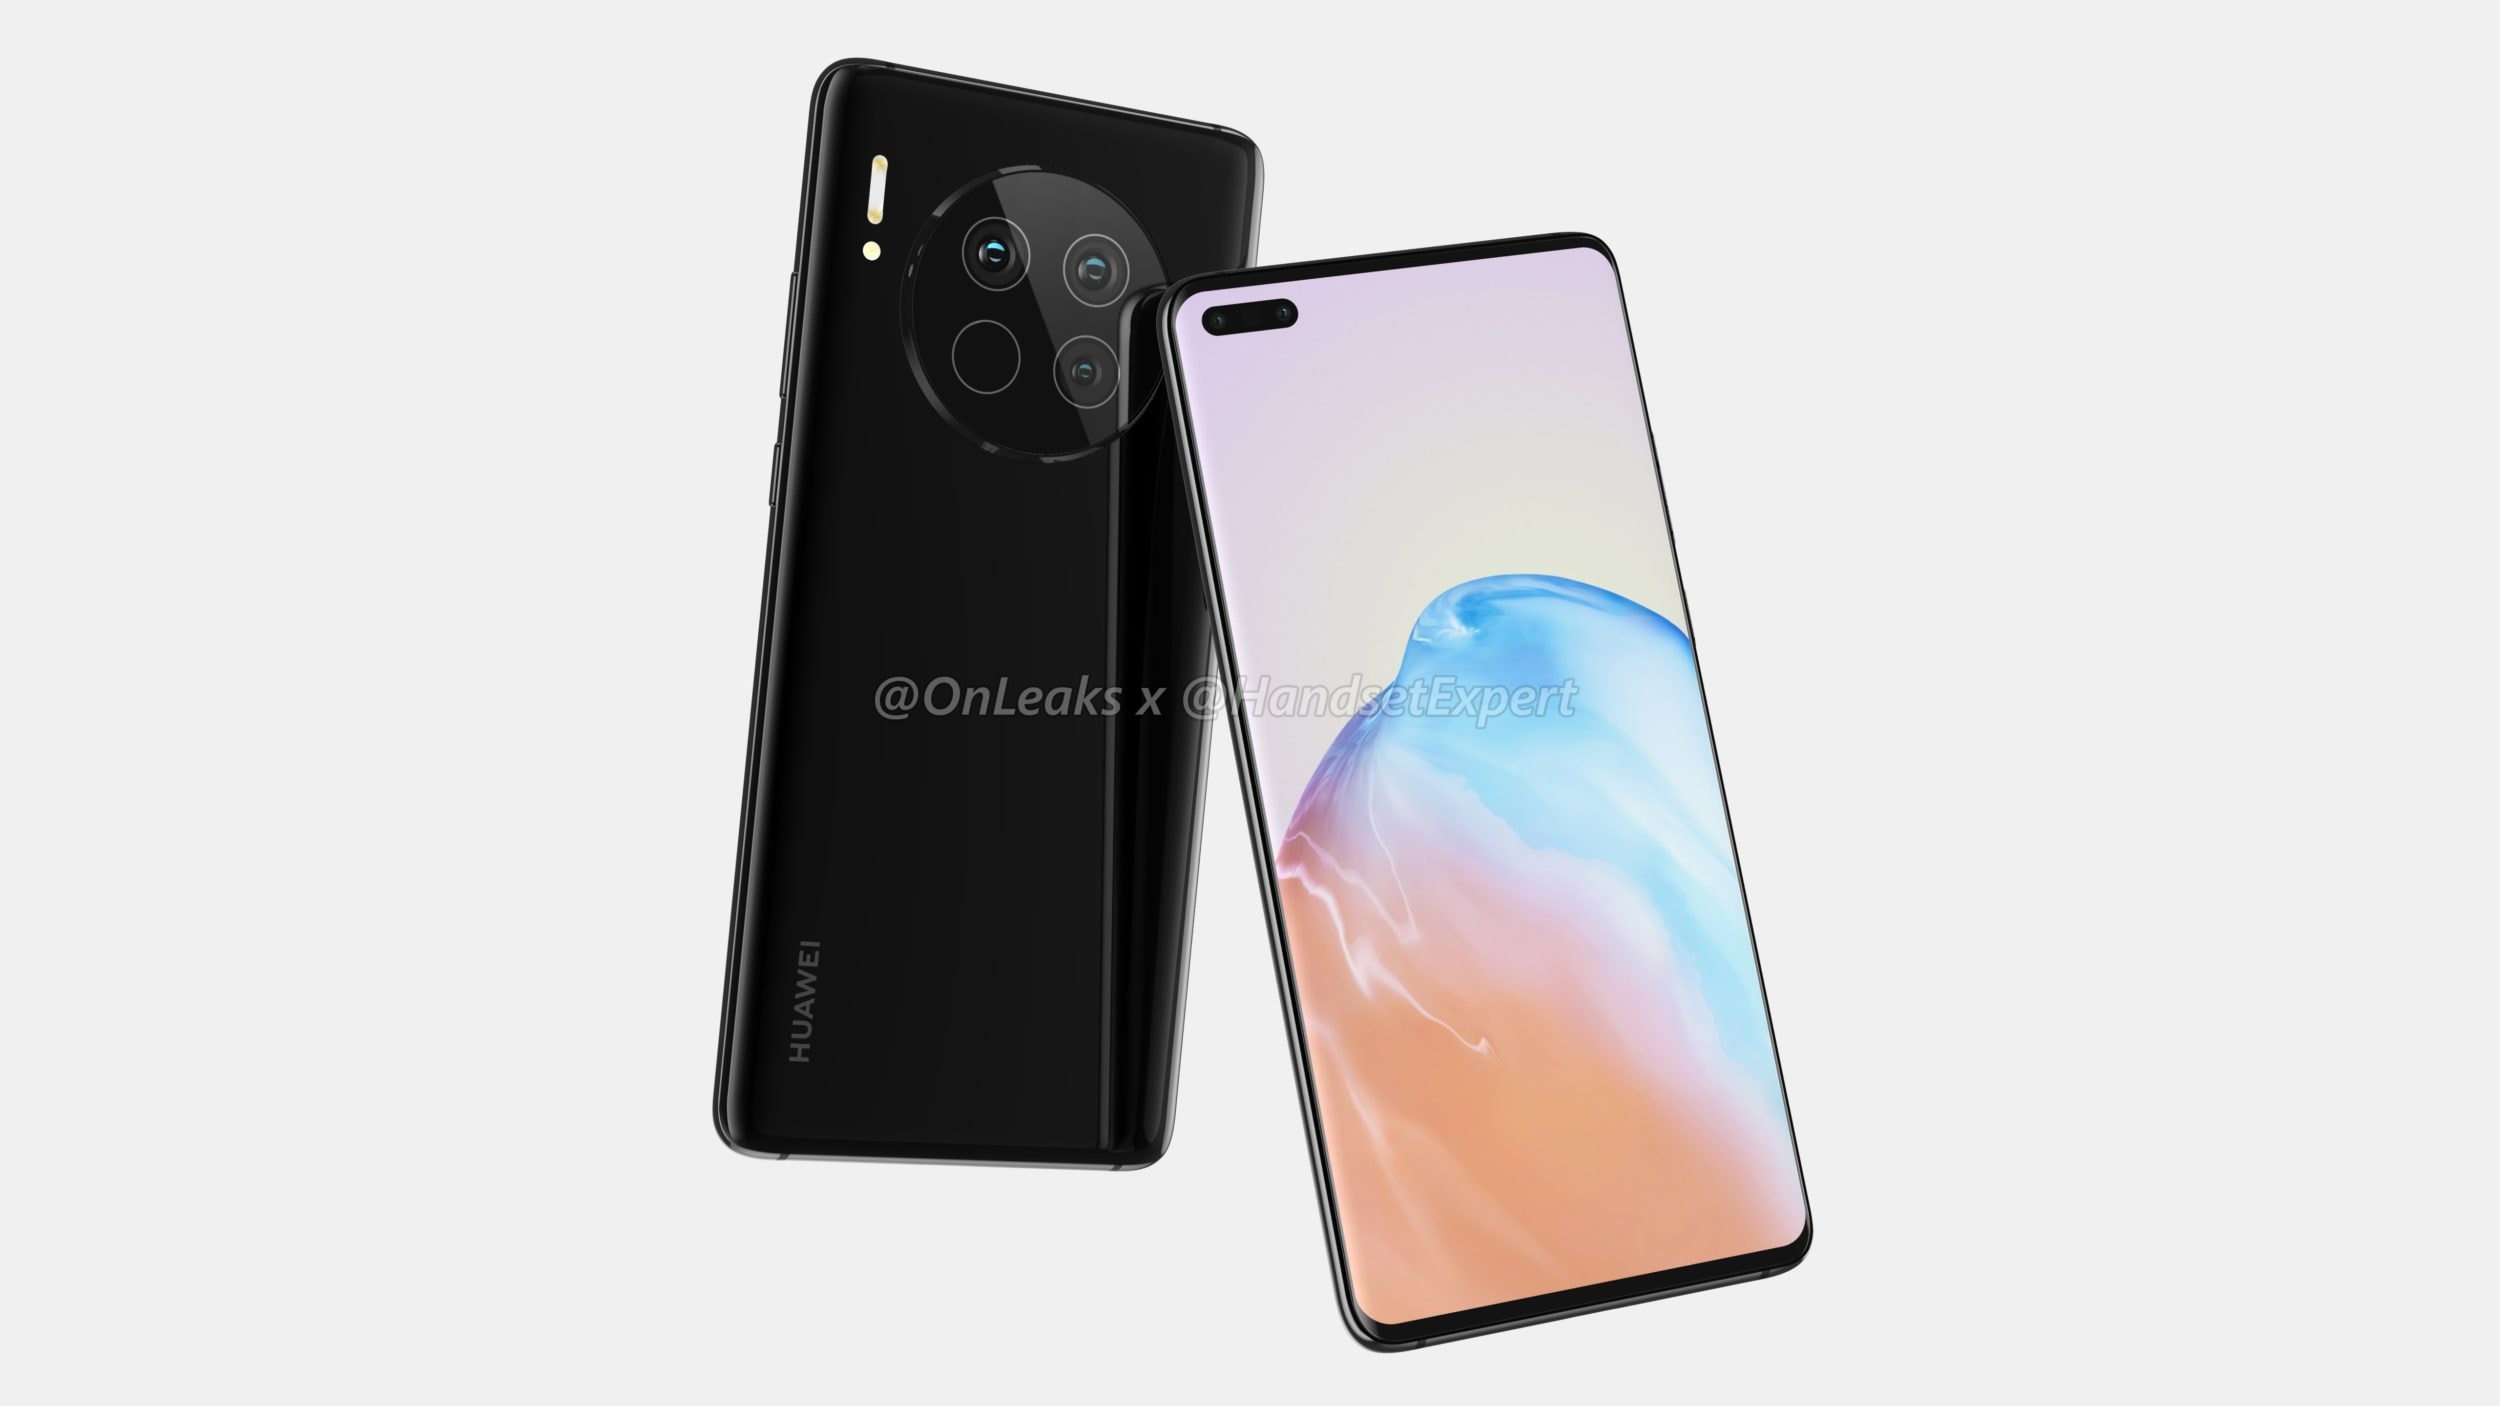 Huawei inizia a parlare dell'arrivo di Mate 40, il primo smartphone con 5G integrato in un processore a 5 nm